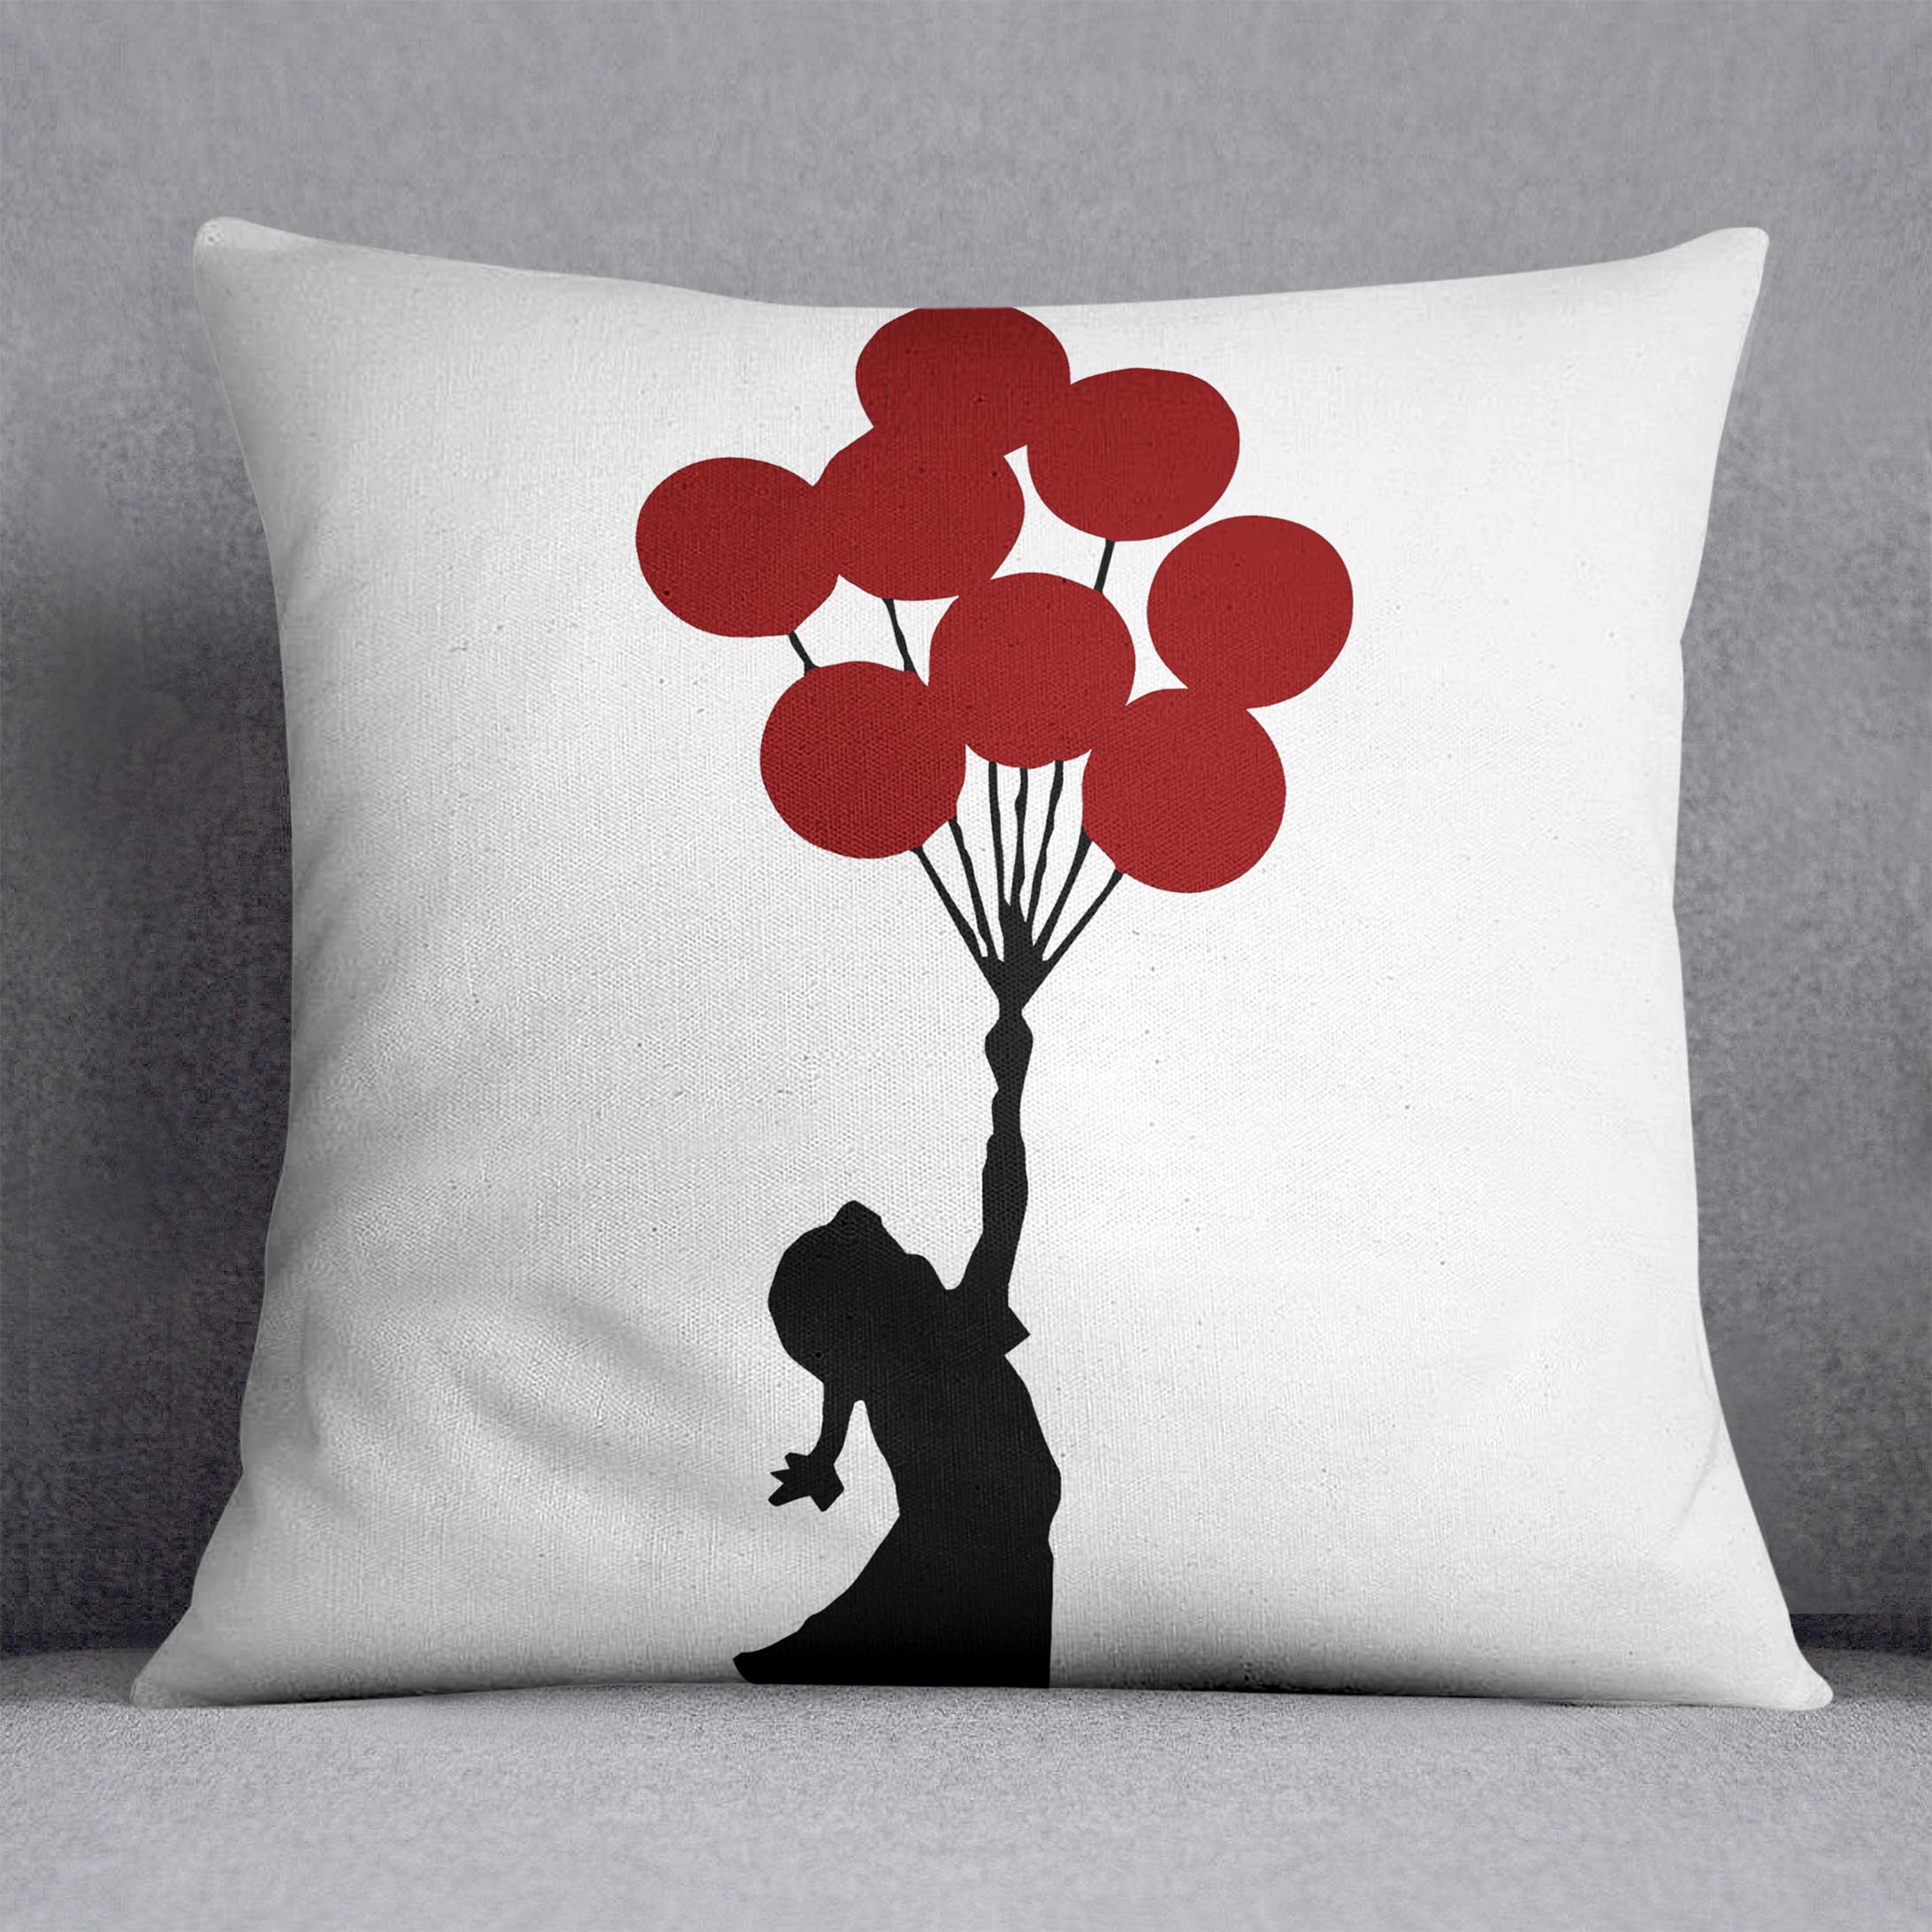 Banksy Flying Balloon Girl Cushion